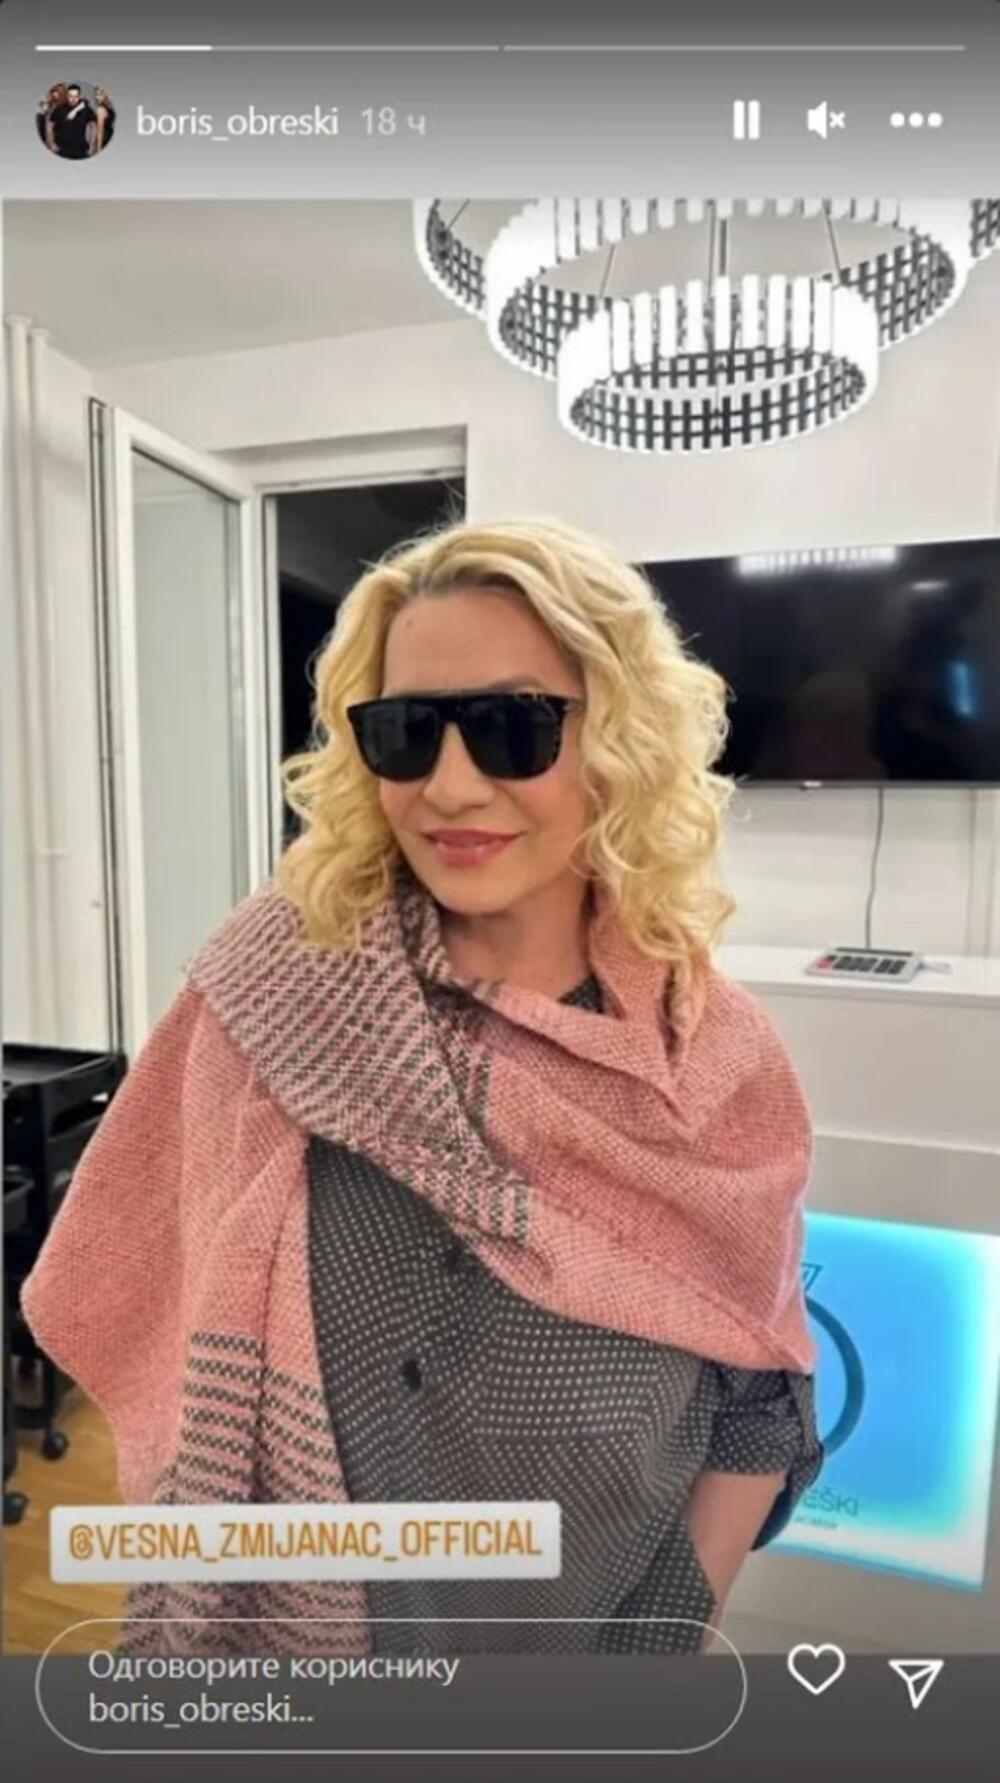 Pevačica Vesna Zmijanac imala je operaciju srca u martu, kada joj je ugrađen bajpas, otkad se nije oglašavala javno, sve do sada